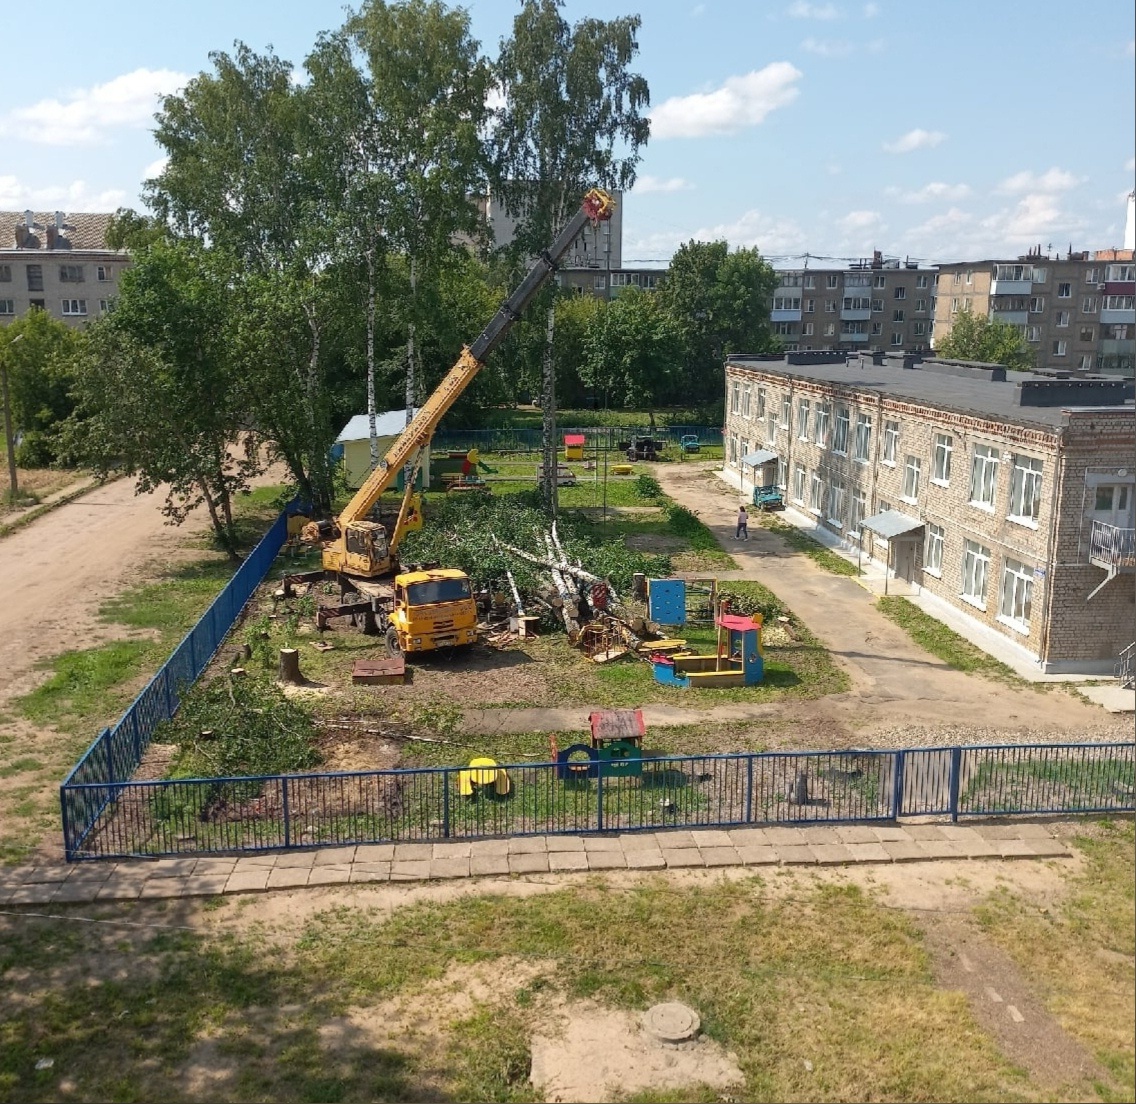 "Мы против": жители ярославской области не хотят вырубки деревьев на дворе детского сада